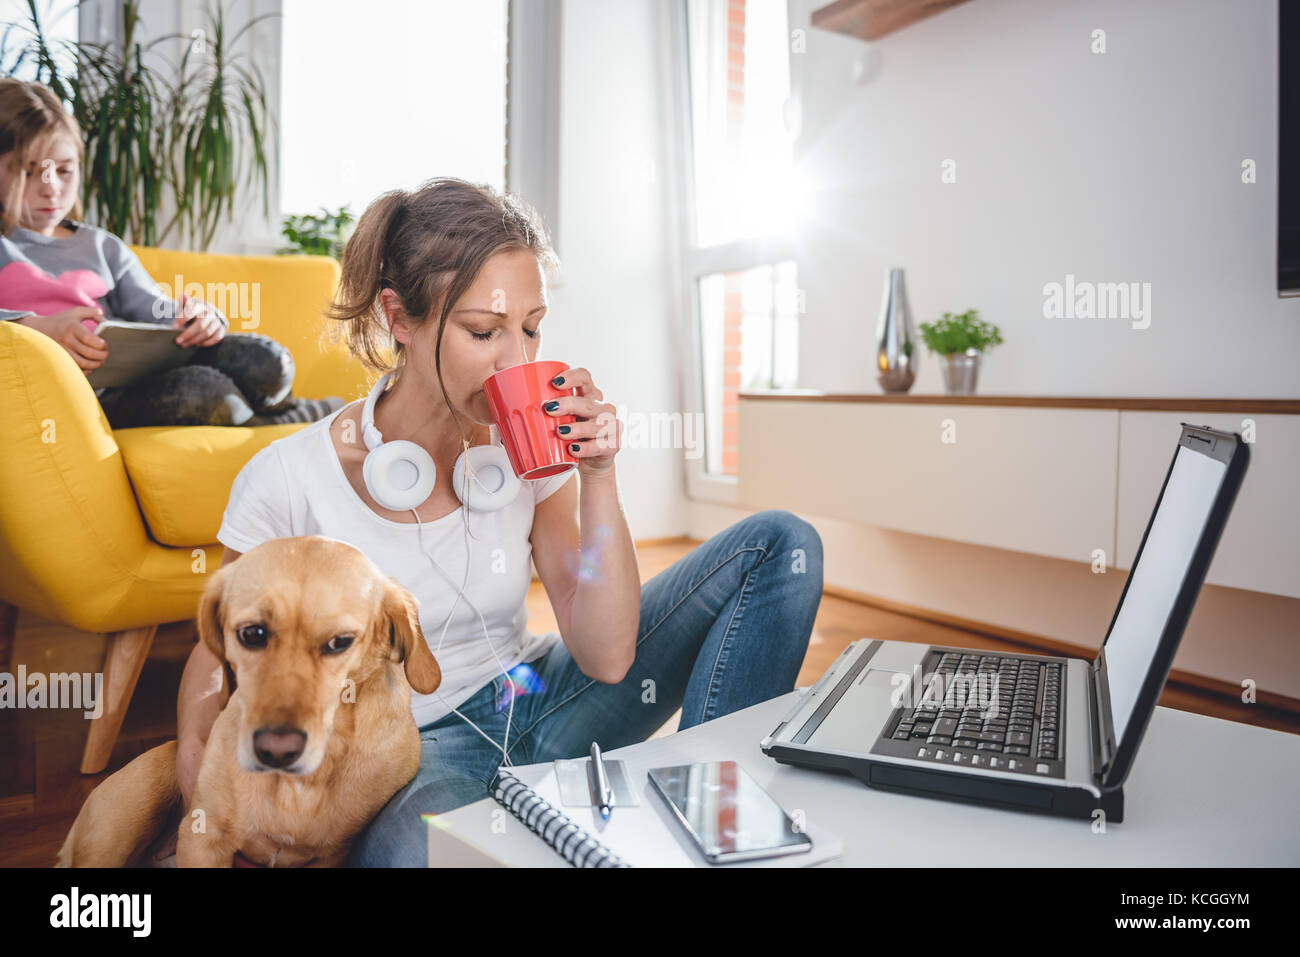 Mujer vistiendo camisa blanca sentada en el suelo junto a la mesa bebiendo café y acariciar a un perro Foto de stock